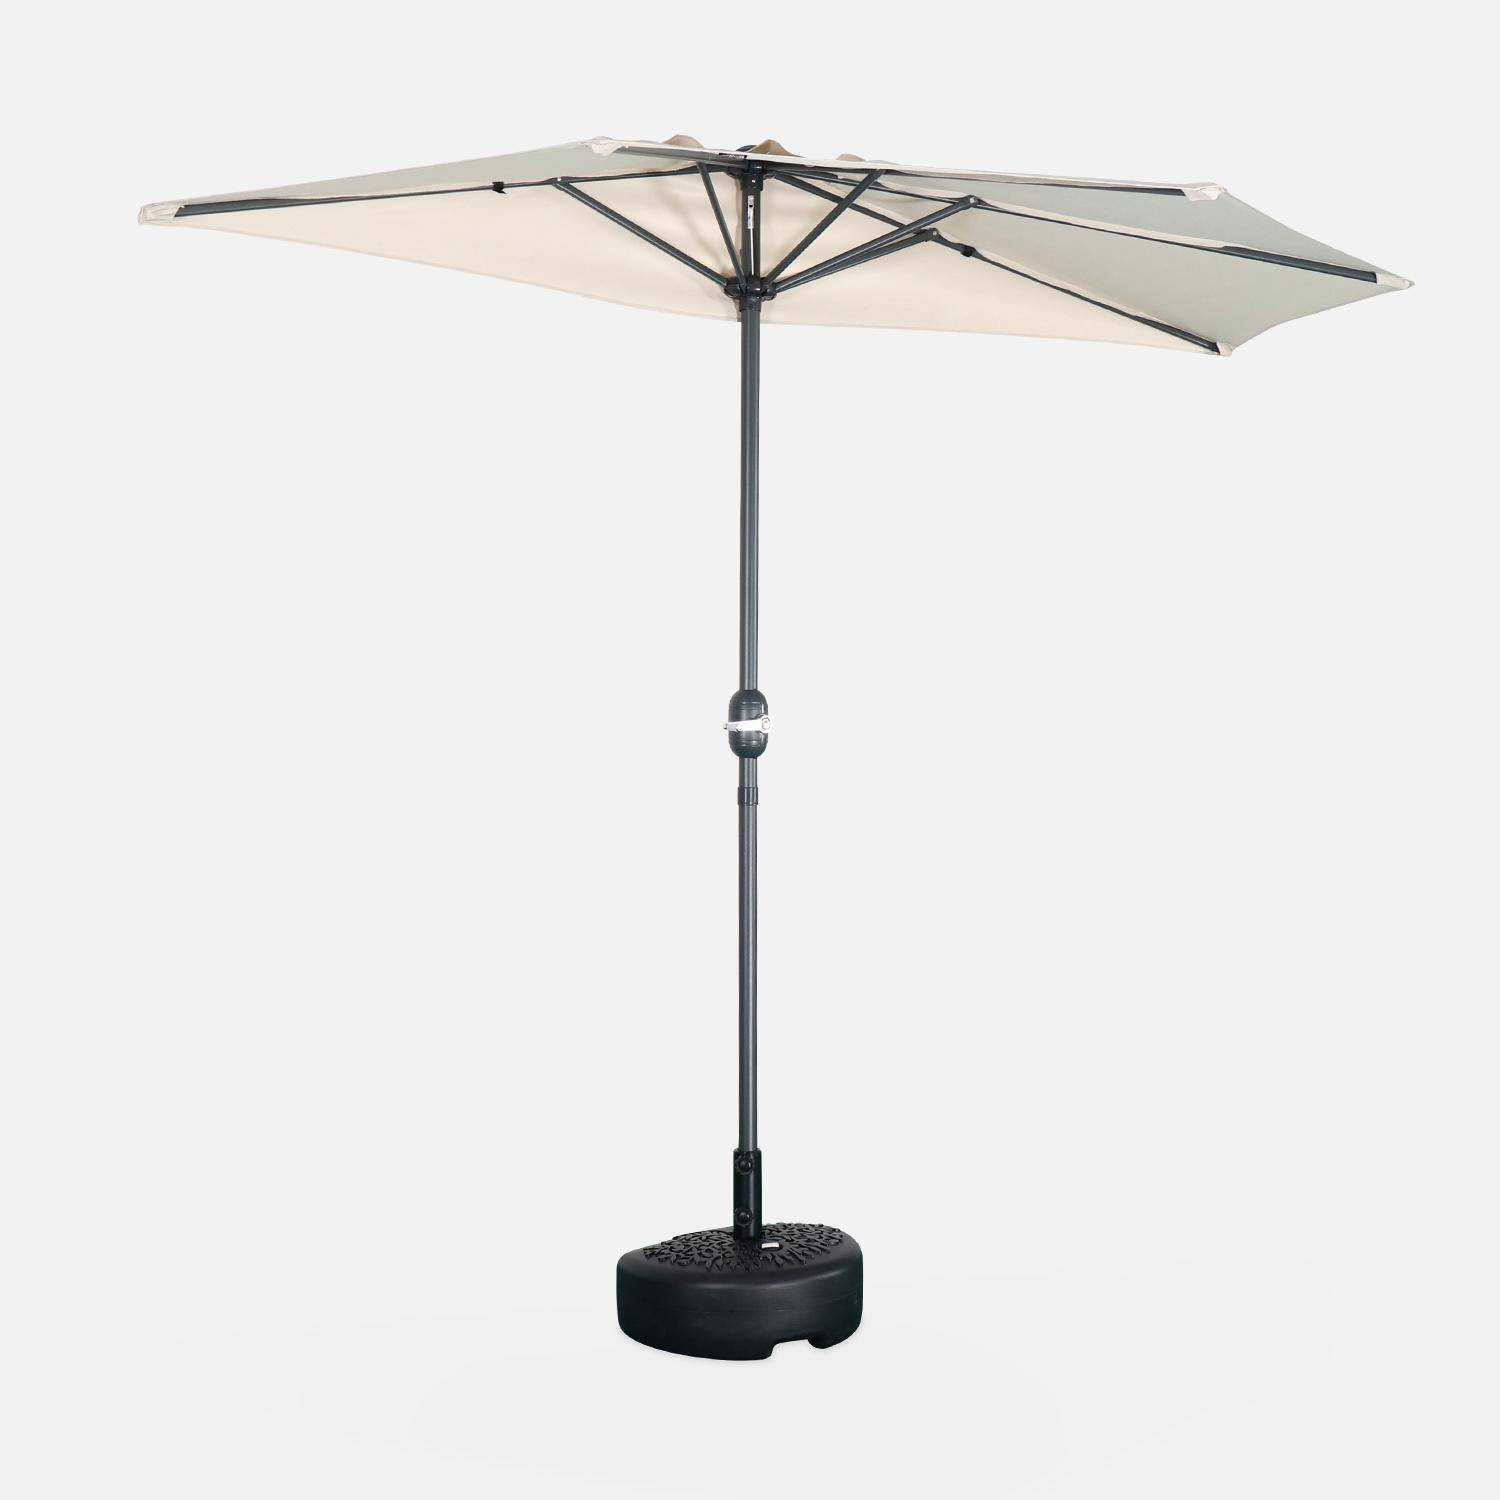 Ombrellone da balcone Ø250cm - CALVI - Mezzo ombrellone dritto, palo in alluminio con manovella, telo colore sabbia Photo2